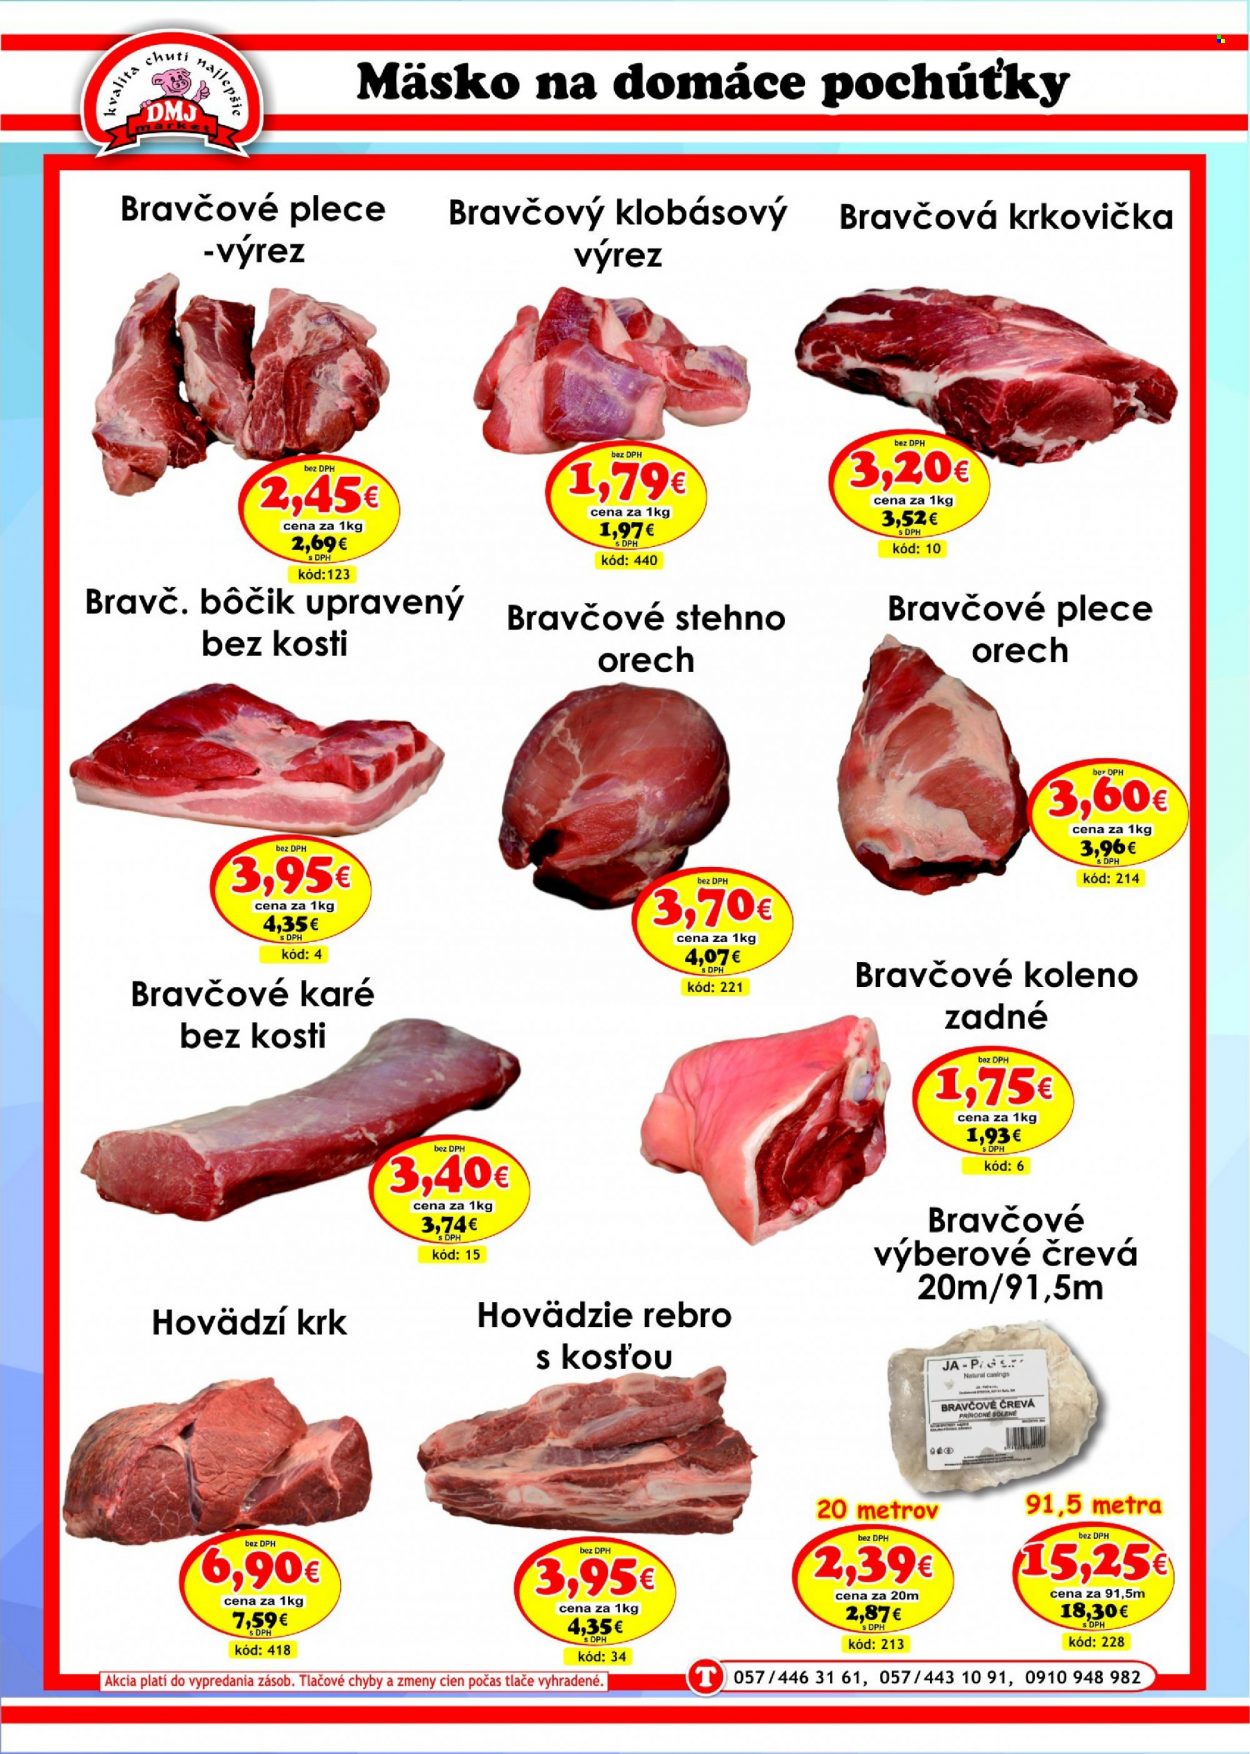 thumbnail - Leták DMJ market - Produkty v akcii - hovädzie mäso, hovädzie rebro, hovädzí krk, bravčové karé, bravčové pliecko, bravčové stehno, bravčová krkovička, bravčové koleno, bravčové črevá, Cien. Strana 2.